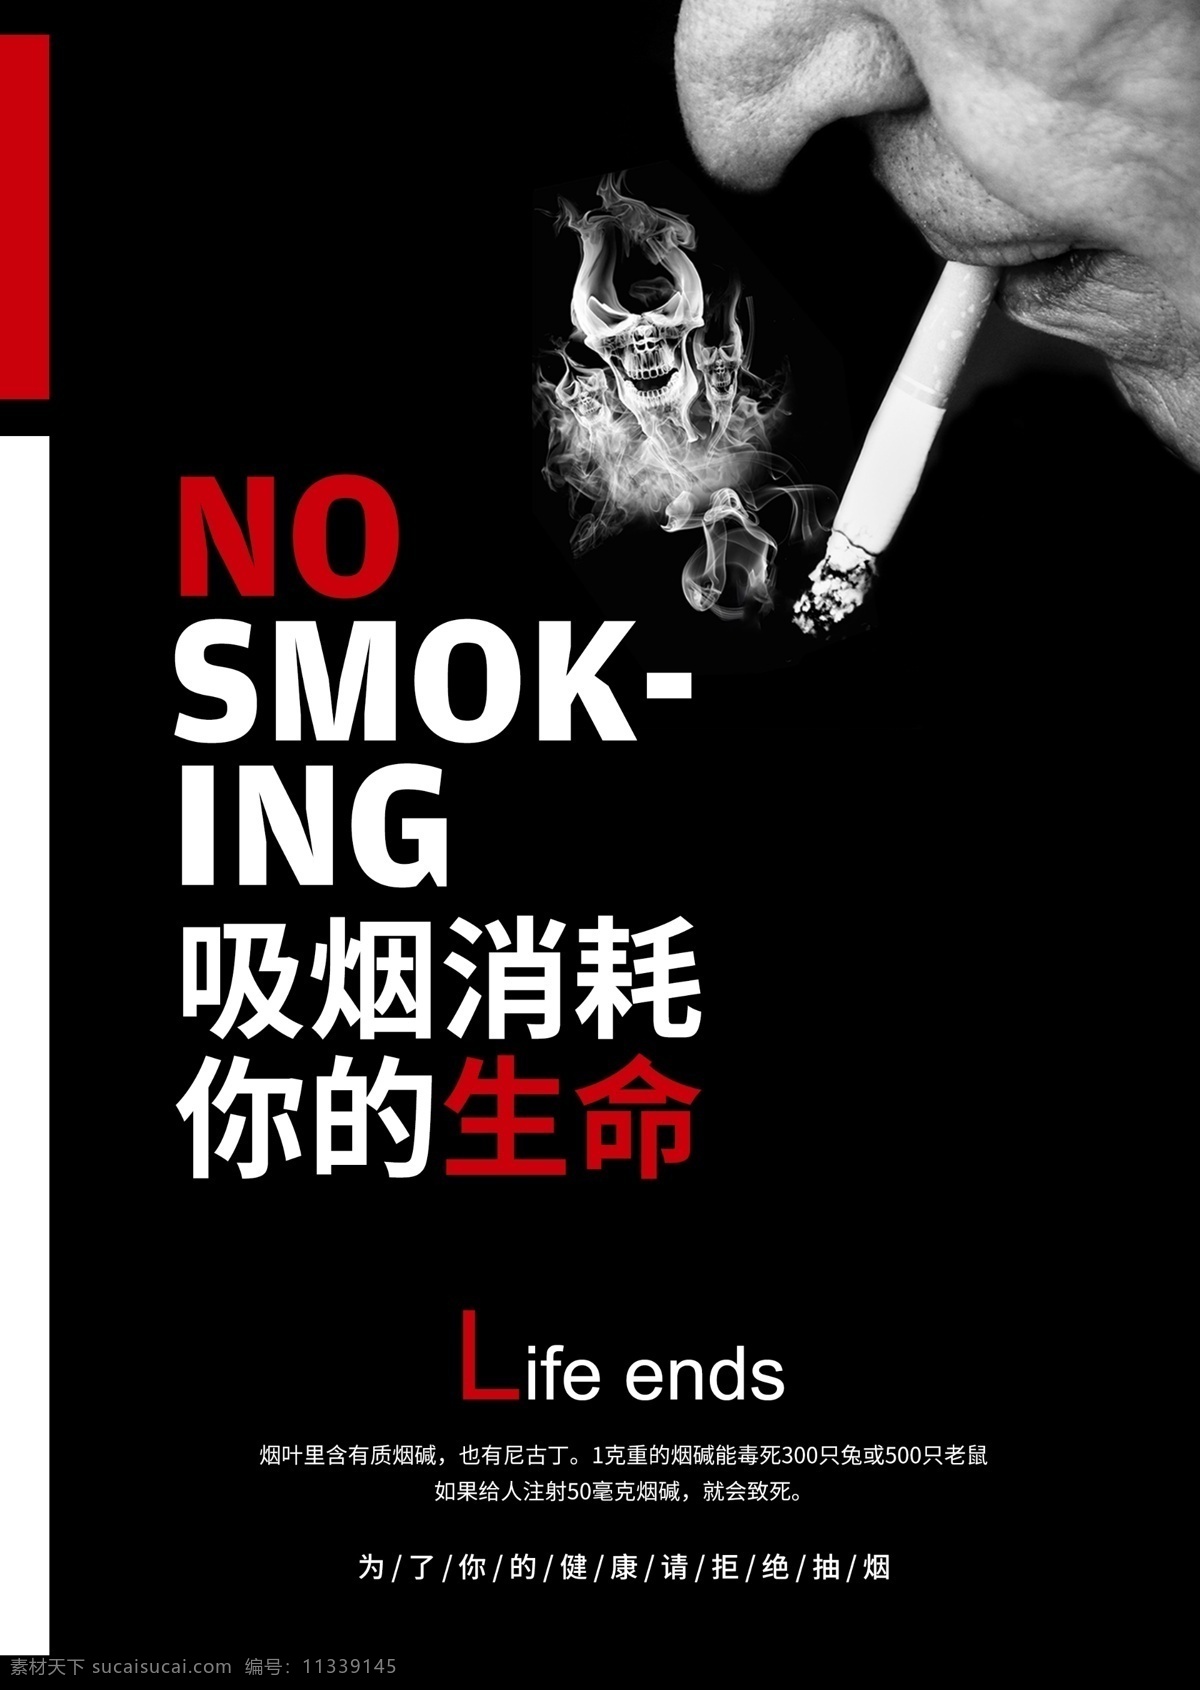 拒绝吸烟 禁止吸烟 吸烟 吸烟危害 珍爱生命 室内广告设计 海报